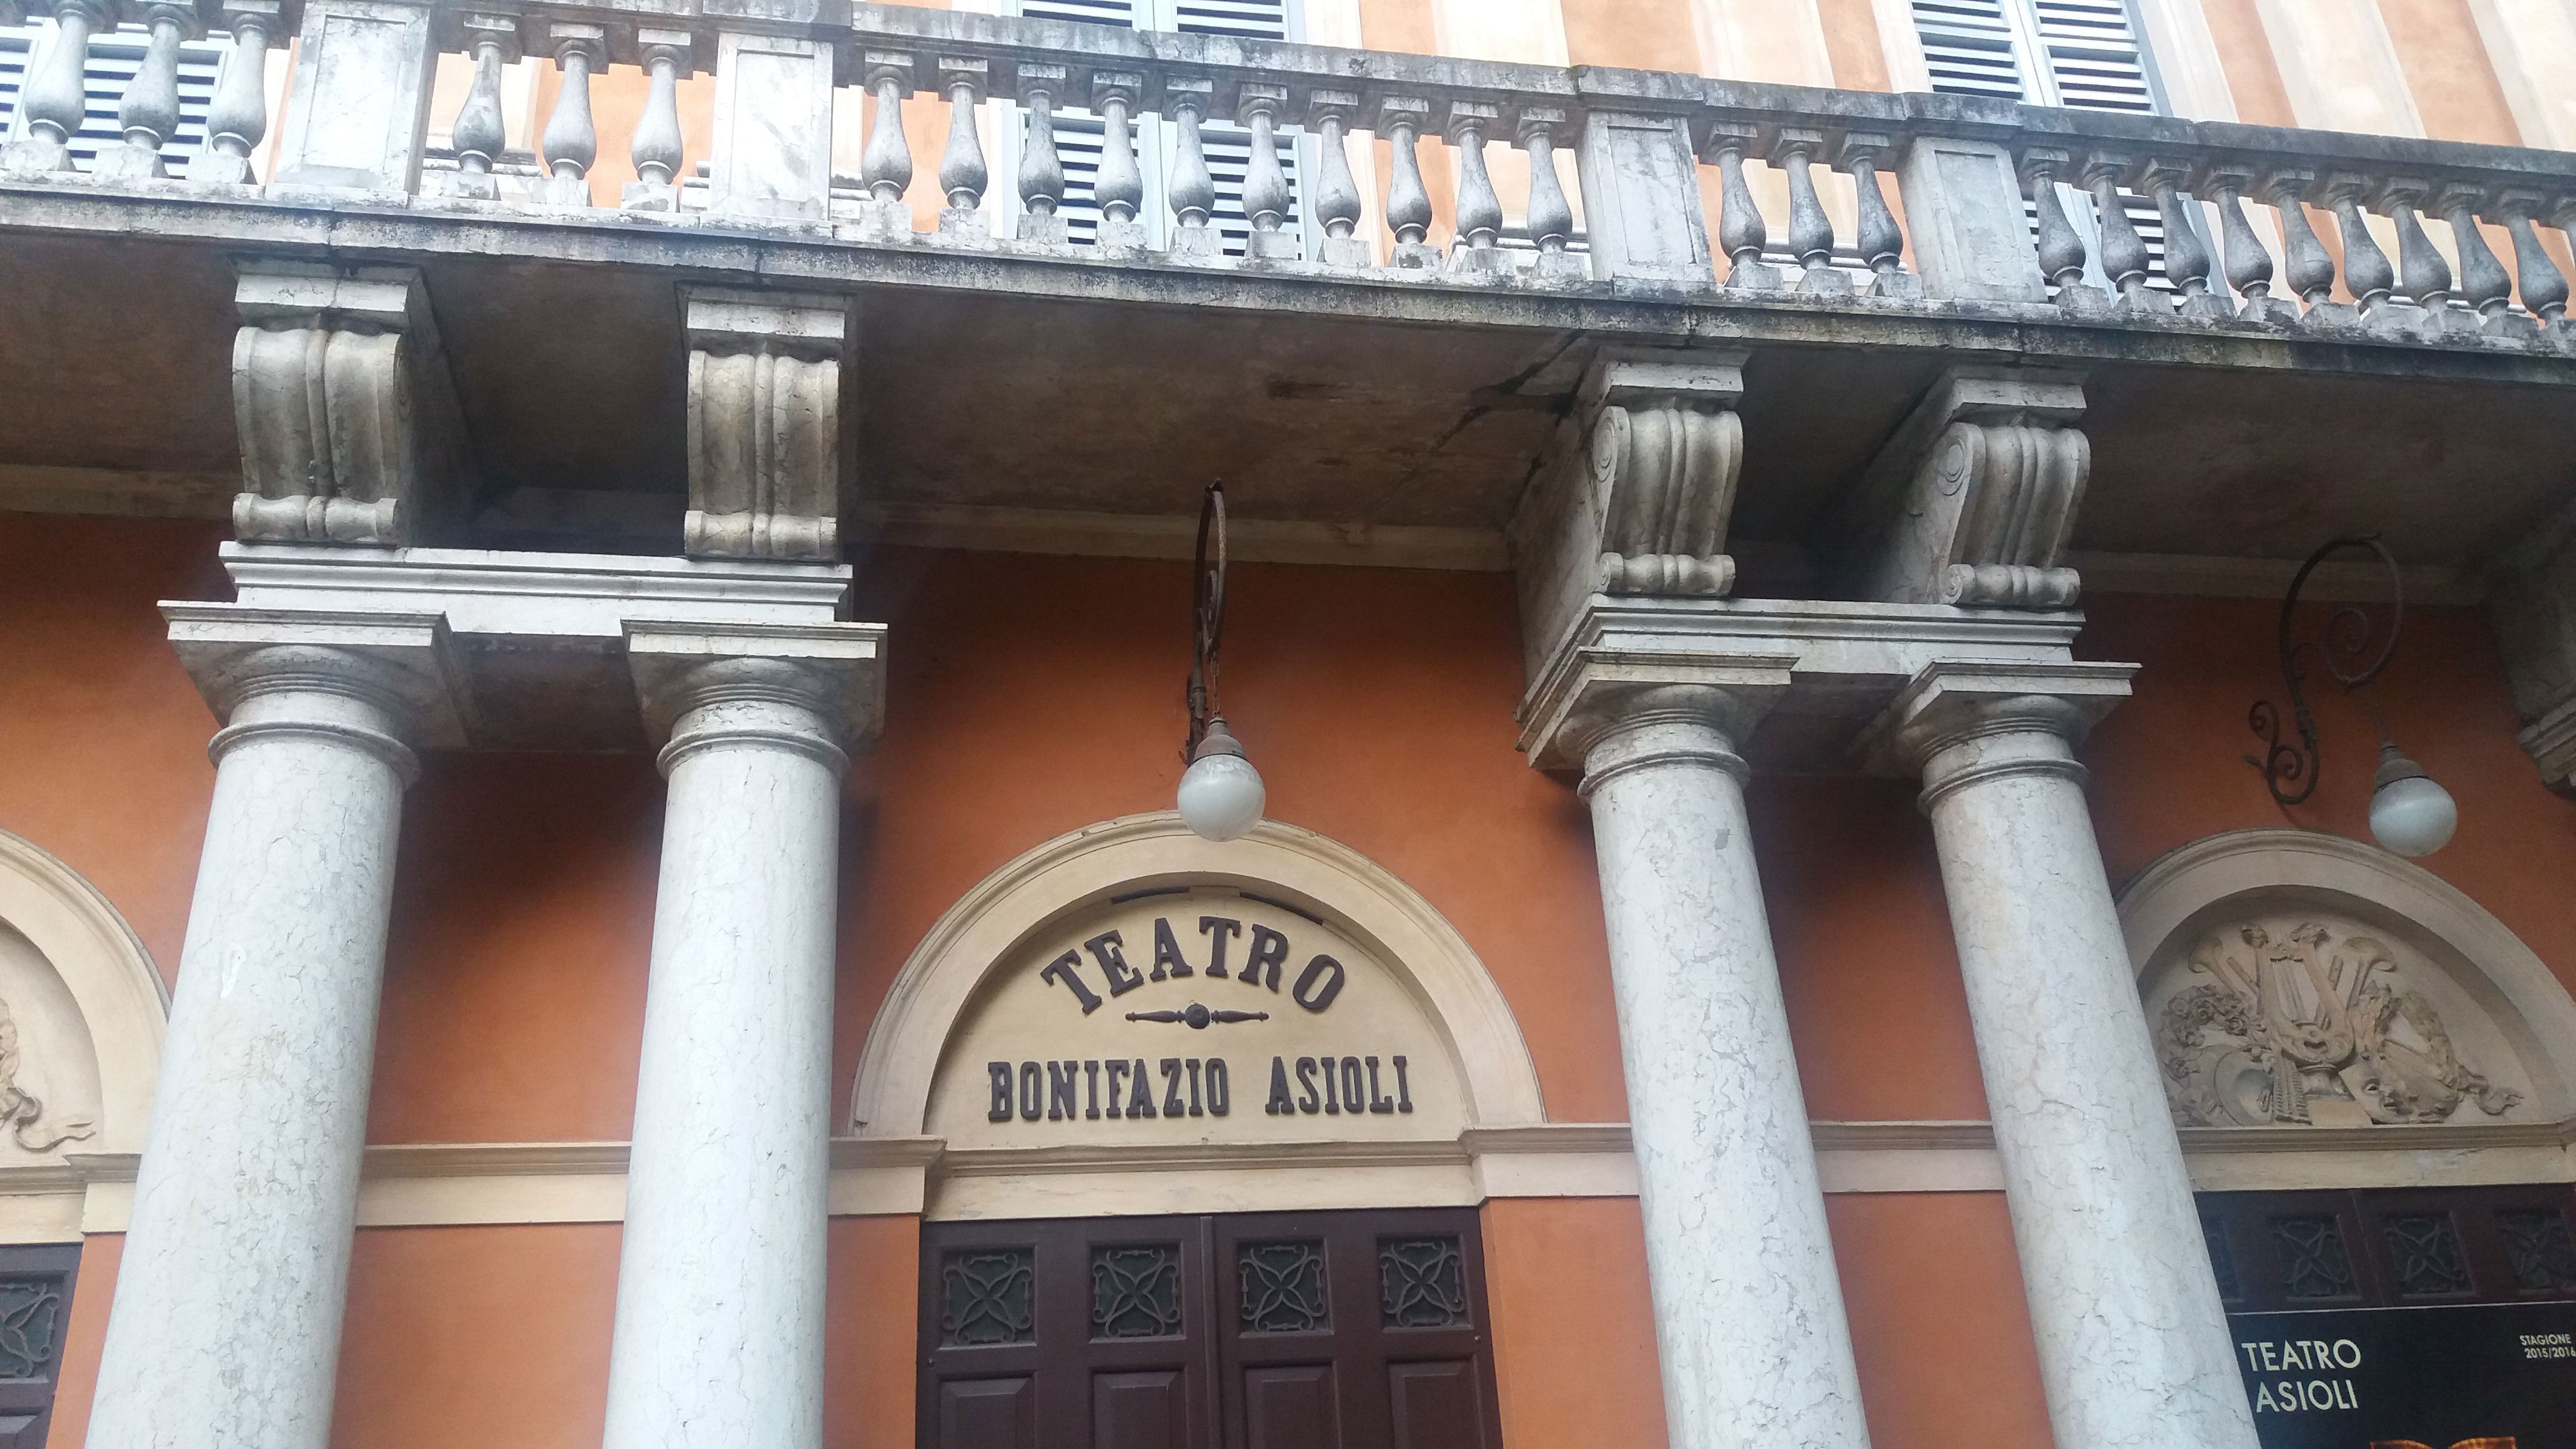 Teatro Comunale Bonifazio Asioli en Correggio: 3 opiniones y 5 fotos